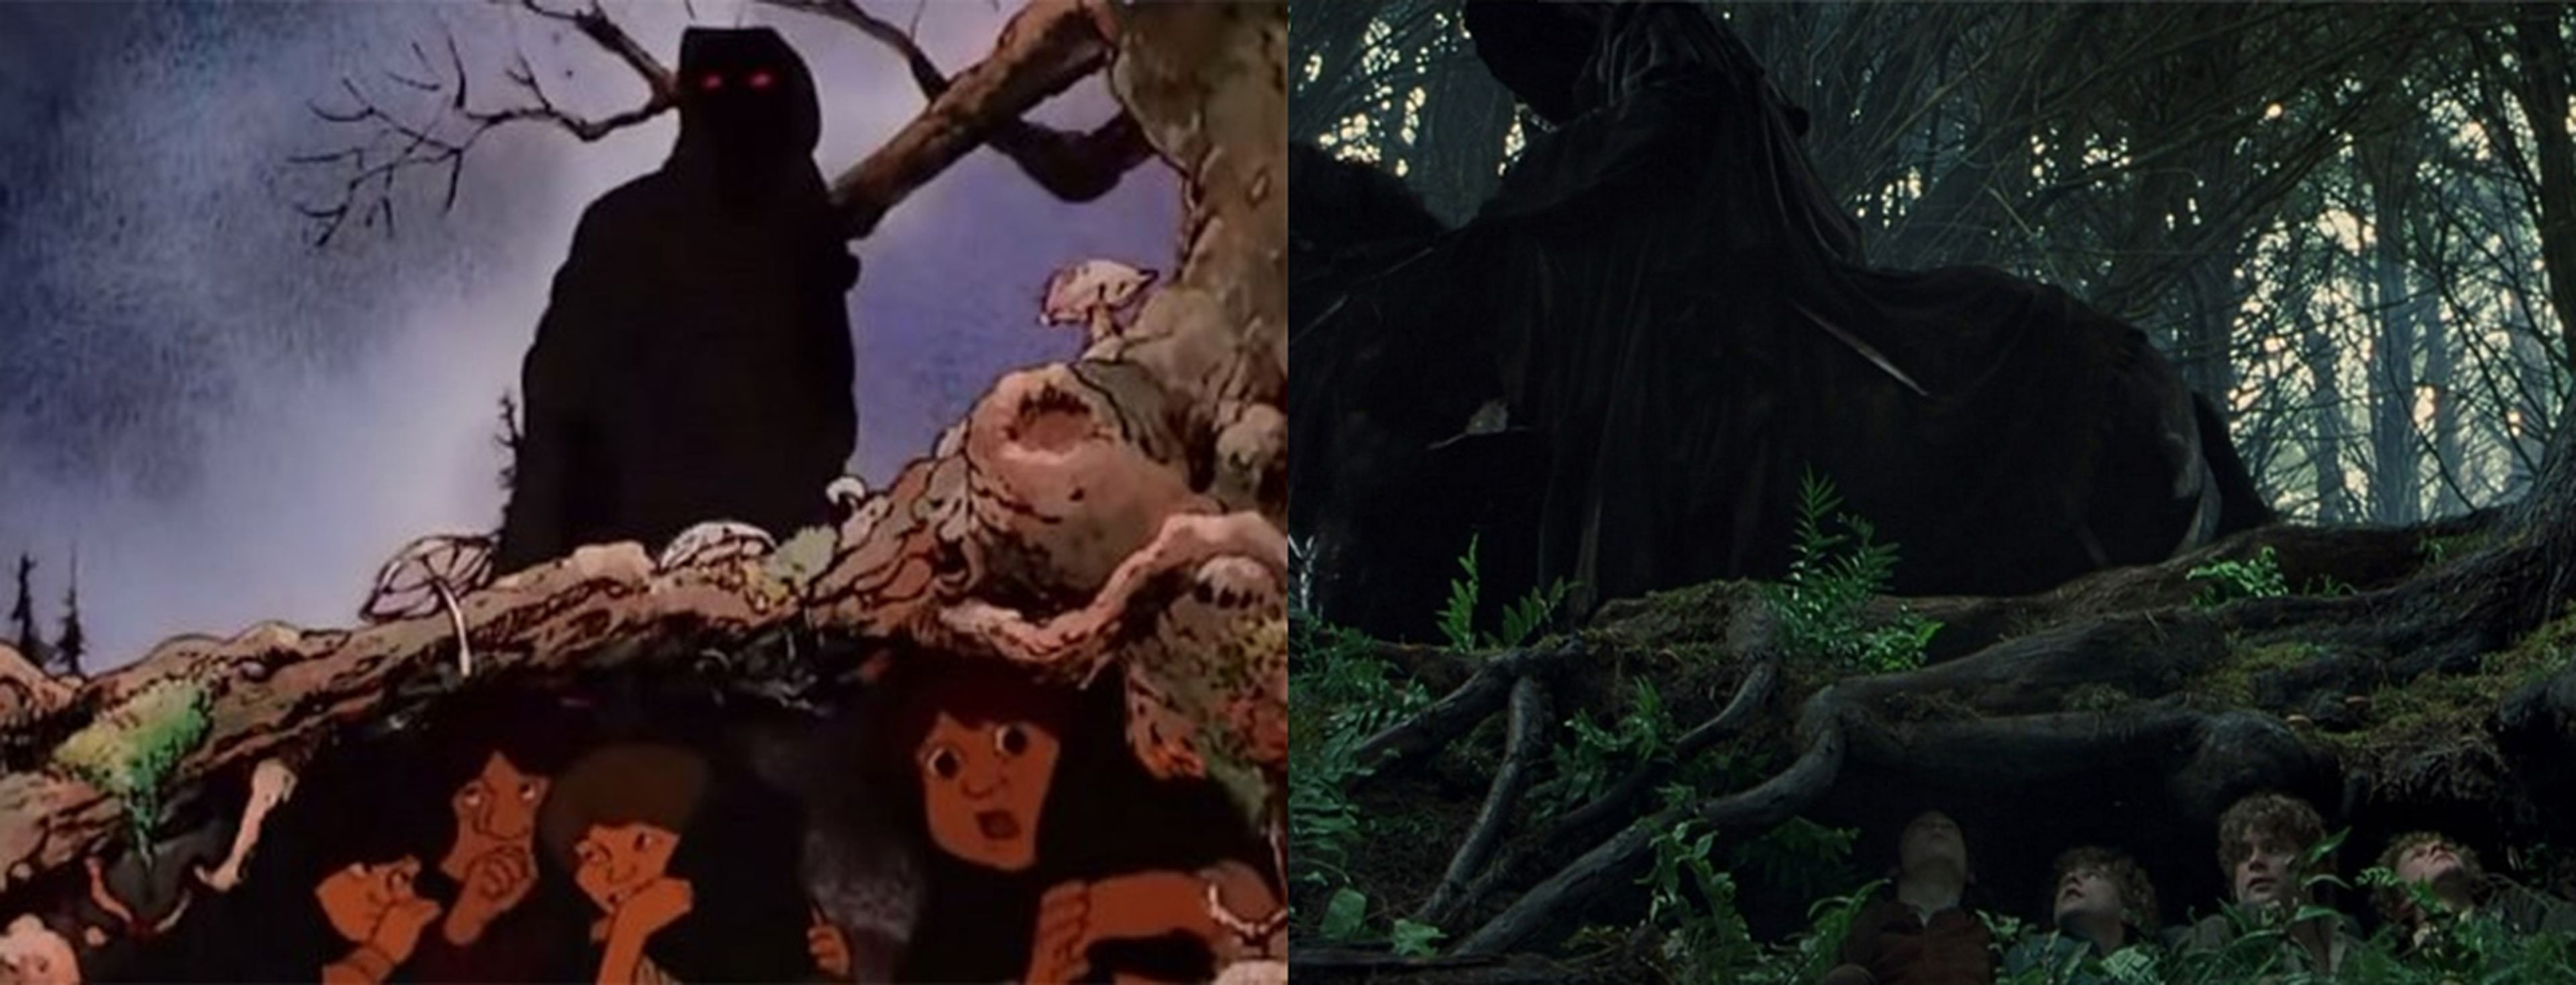 Peter Jackson no fue el primero: esta película animada adaptó 'El Hobbit'  mucho antes y la puedes ver en streaming